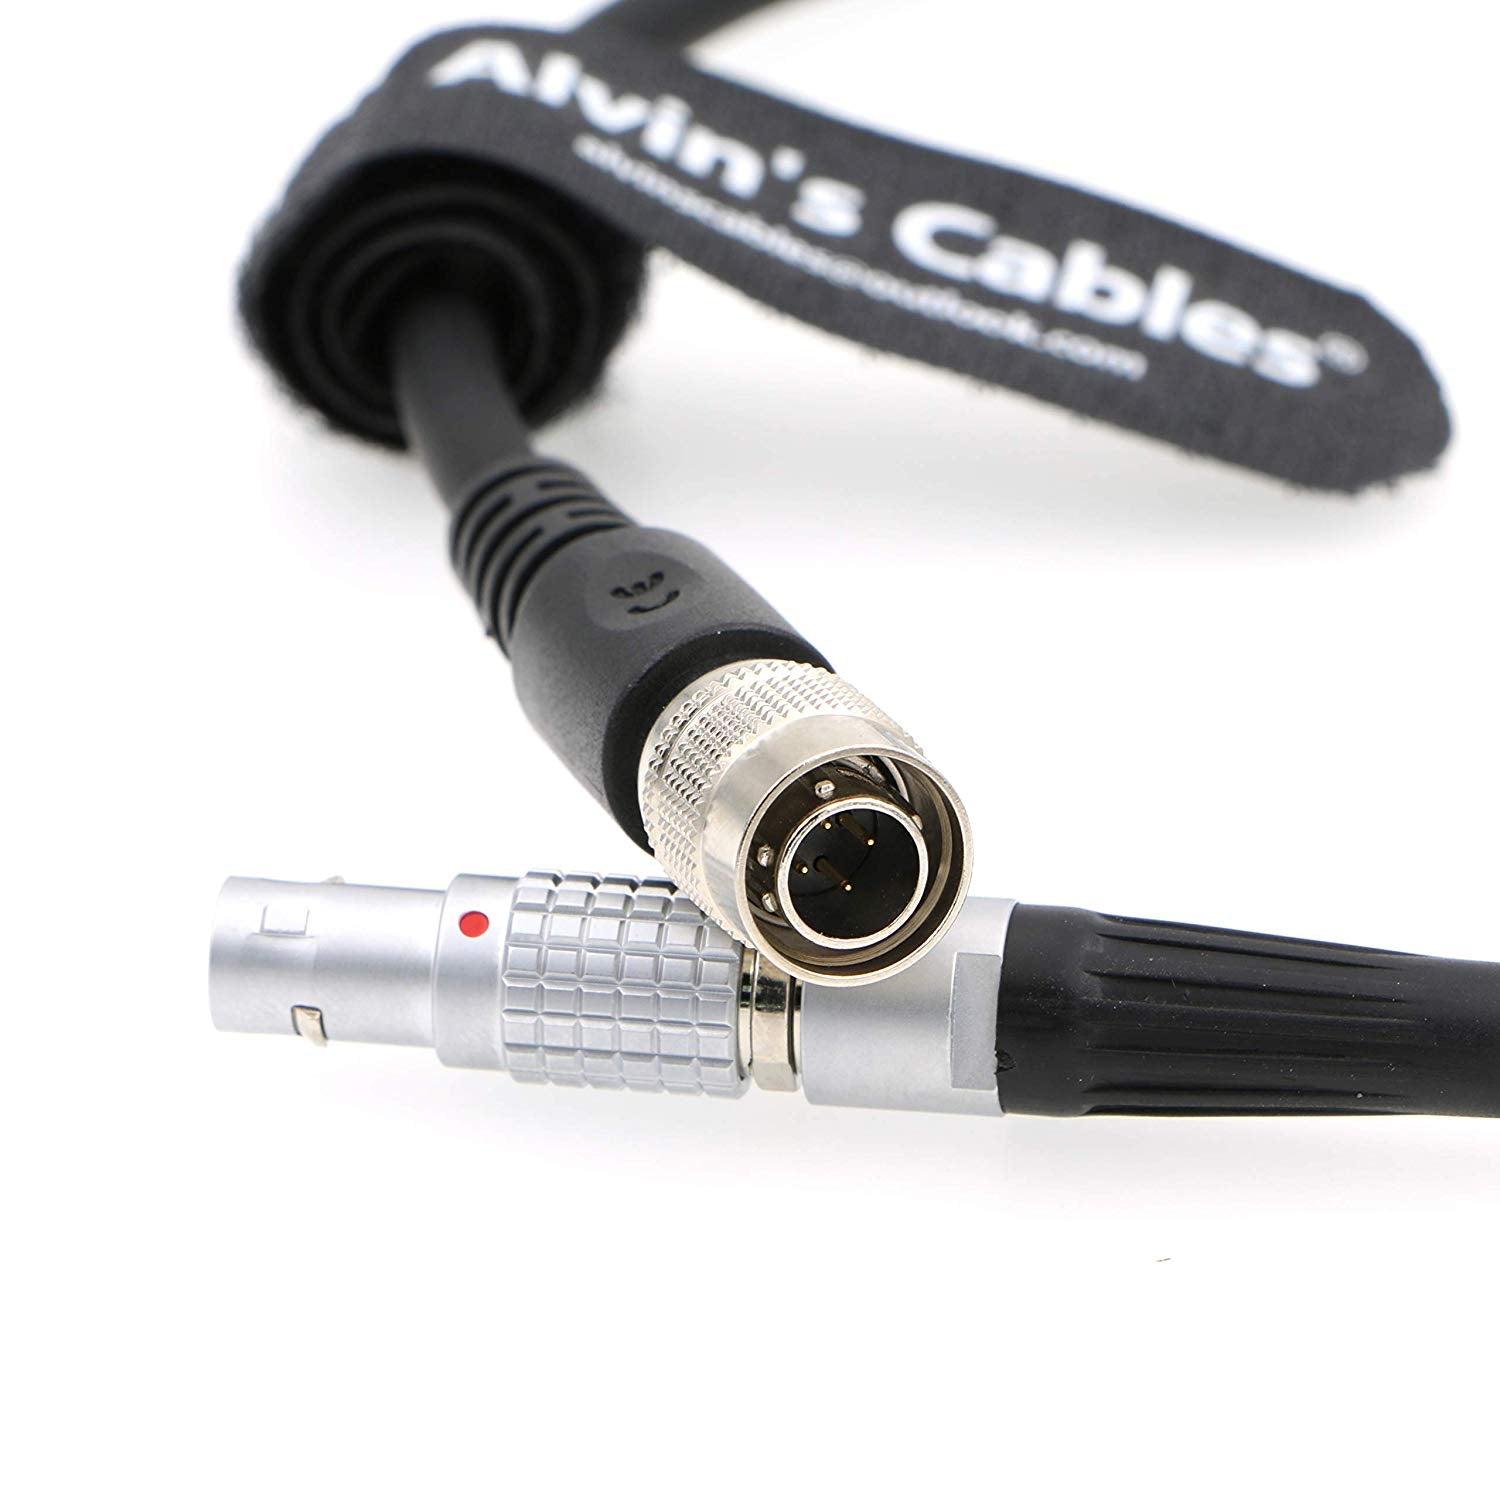 Alvins Kabel 2-poliger Stecker auf Hirose 4-poliger Stecker Kabel Power Teradek Bolt von Steadicam